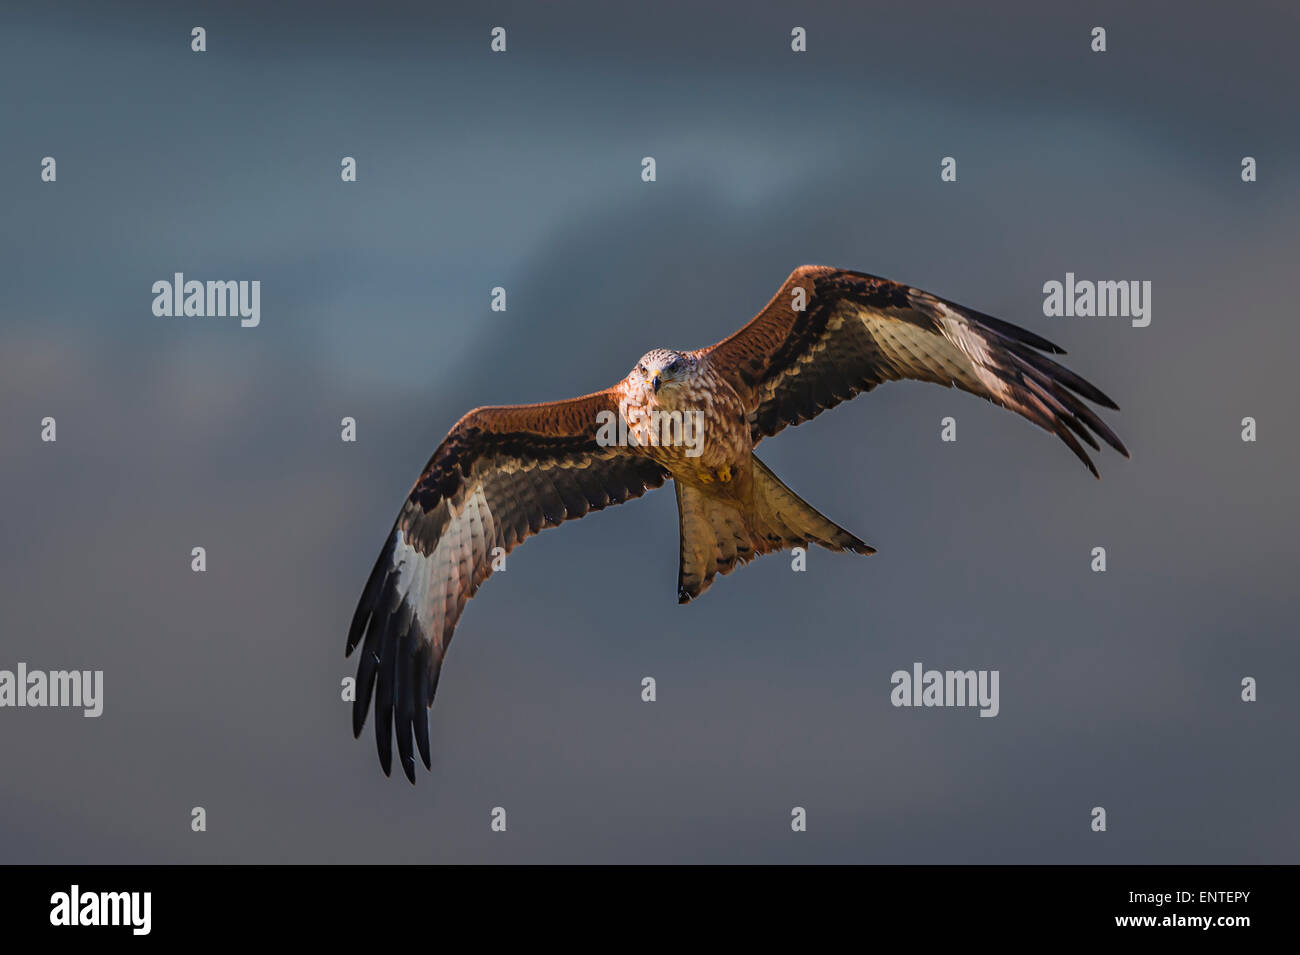 Nibbio reale (Milvus milvus), Dumfries and Galloway, Scozia - volo di uccello, raptor, Falcon, hawk Foto Stock